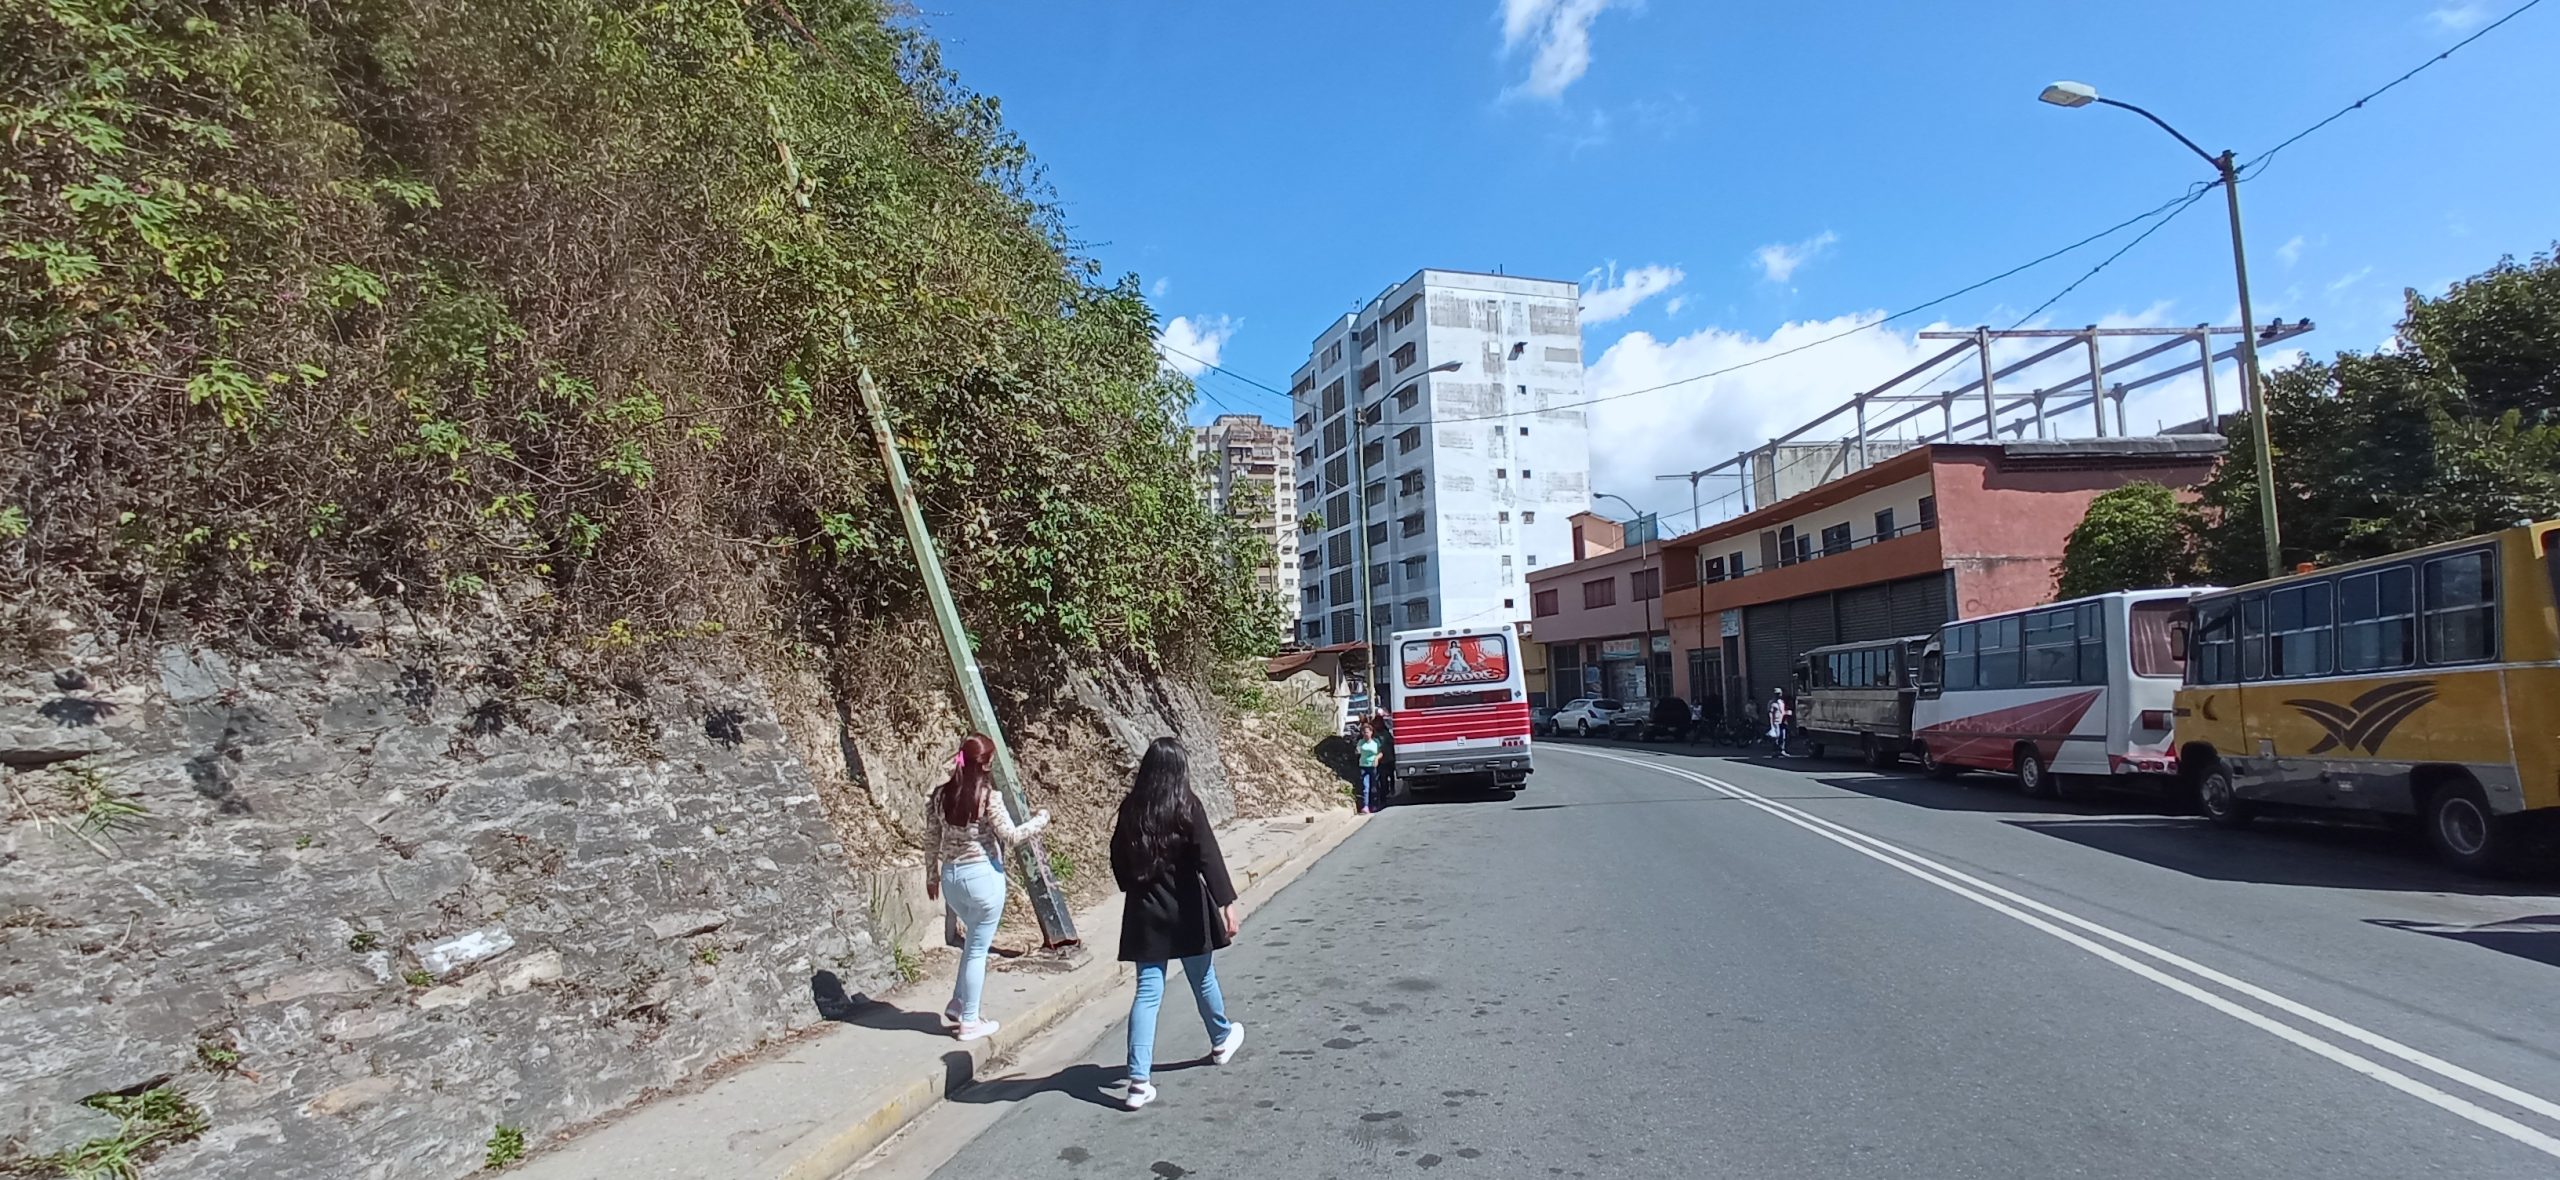 Poste de luz lleva un mes caído en Avenida Bertorelli Cisneros